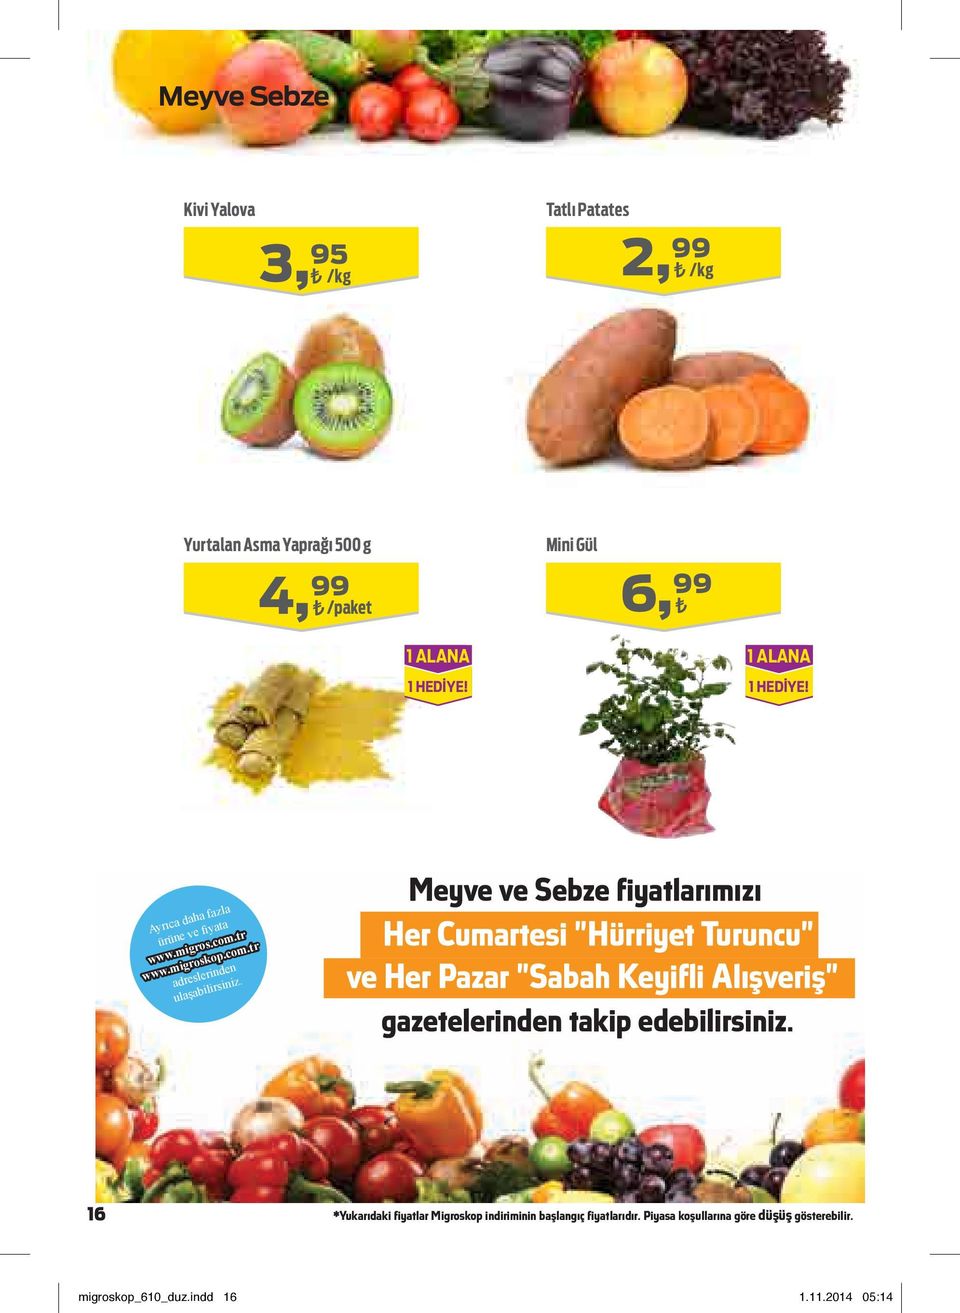 Meyve ve Sebze fiyatlarımızı Her Cumartesi "Hürriyet Turuncu" ve Her Pazar "Sabah Keyifli Alışveriş" gazetelerinden takip edebilirsiniz.